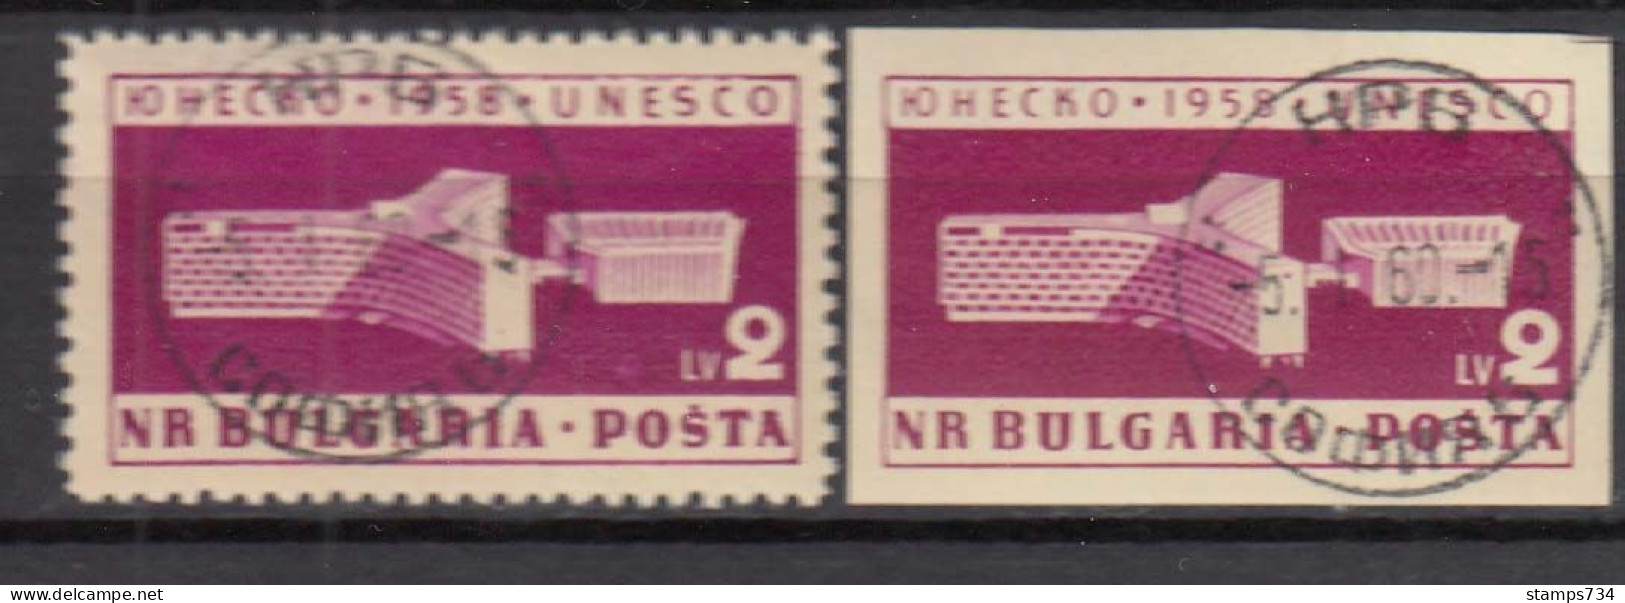 Bulgaria 1959 - UNESCO, Mi-Nr. 1103 A+B, Used - Oblitérés